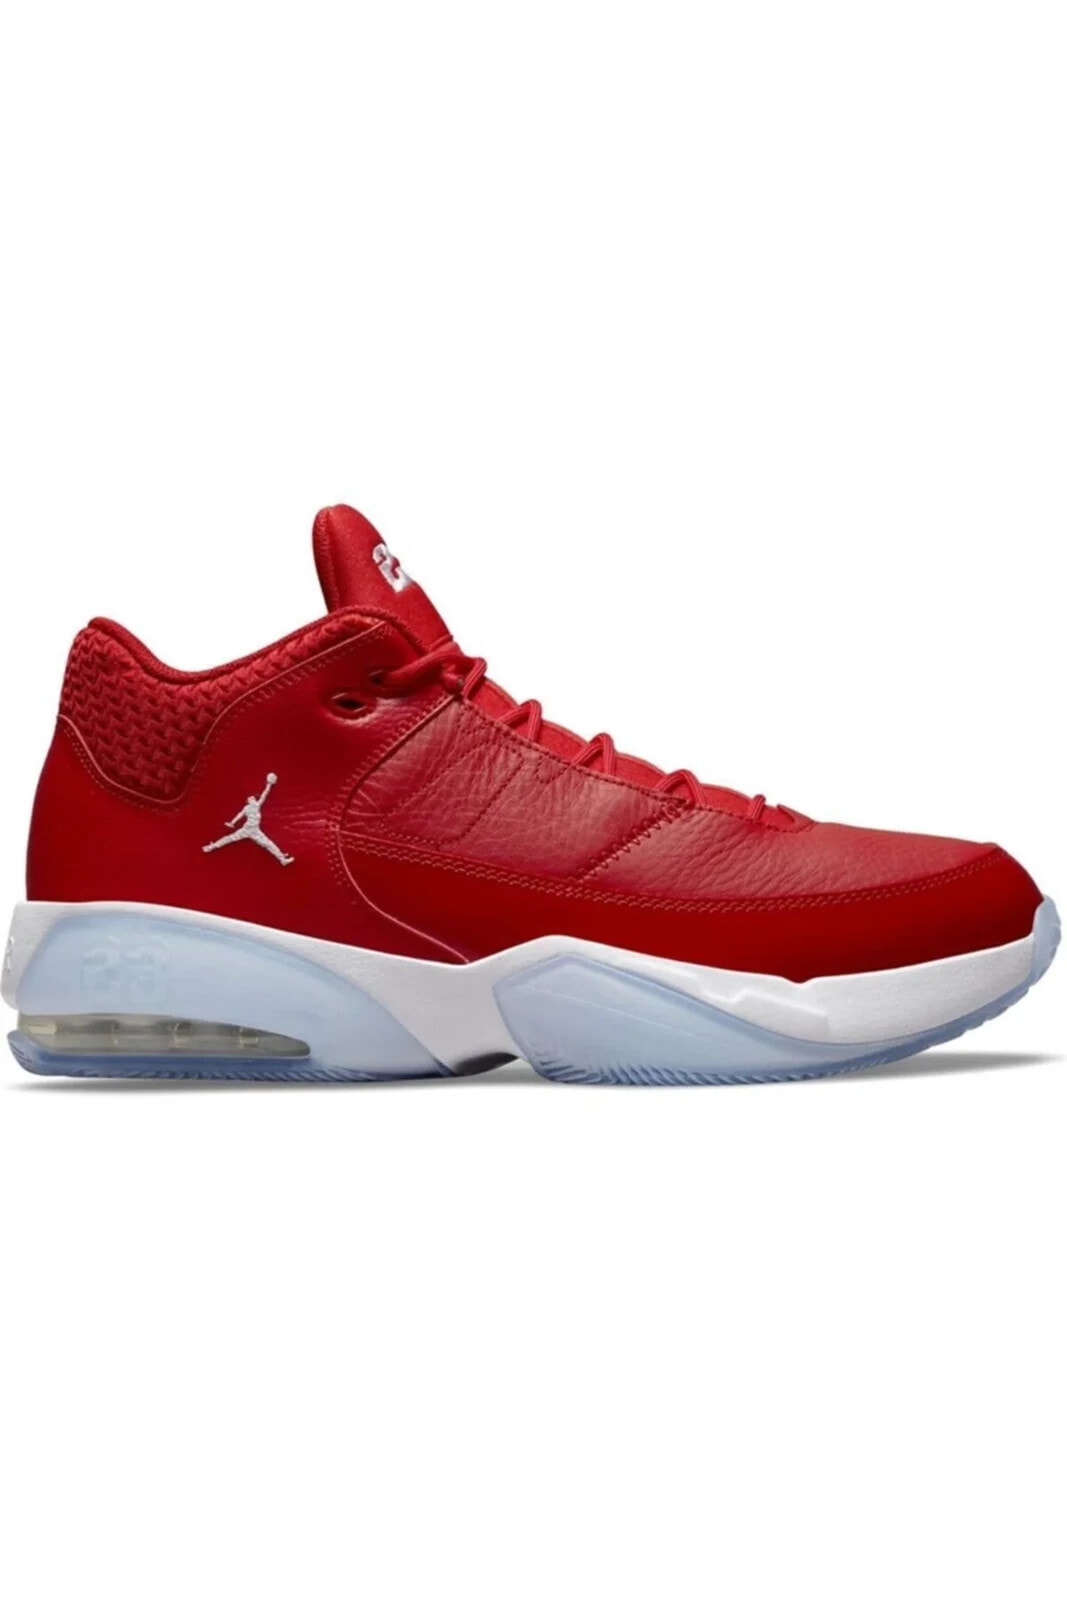 Erkek Kırmızı Basketbol Ayakkabı - Cz4167-600